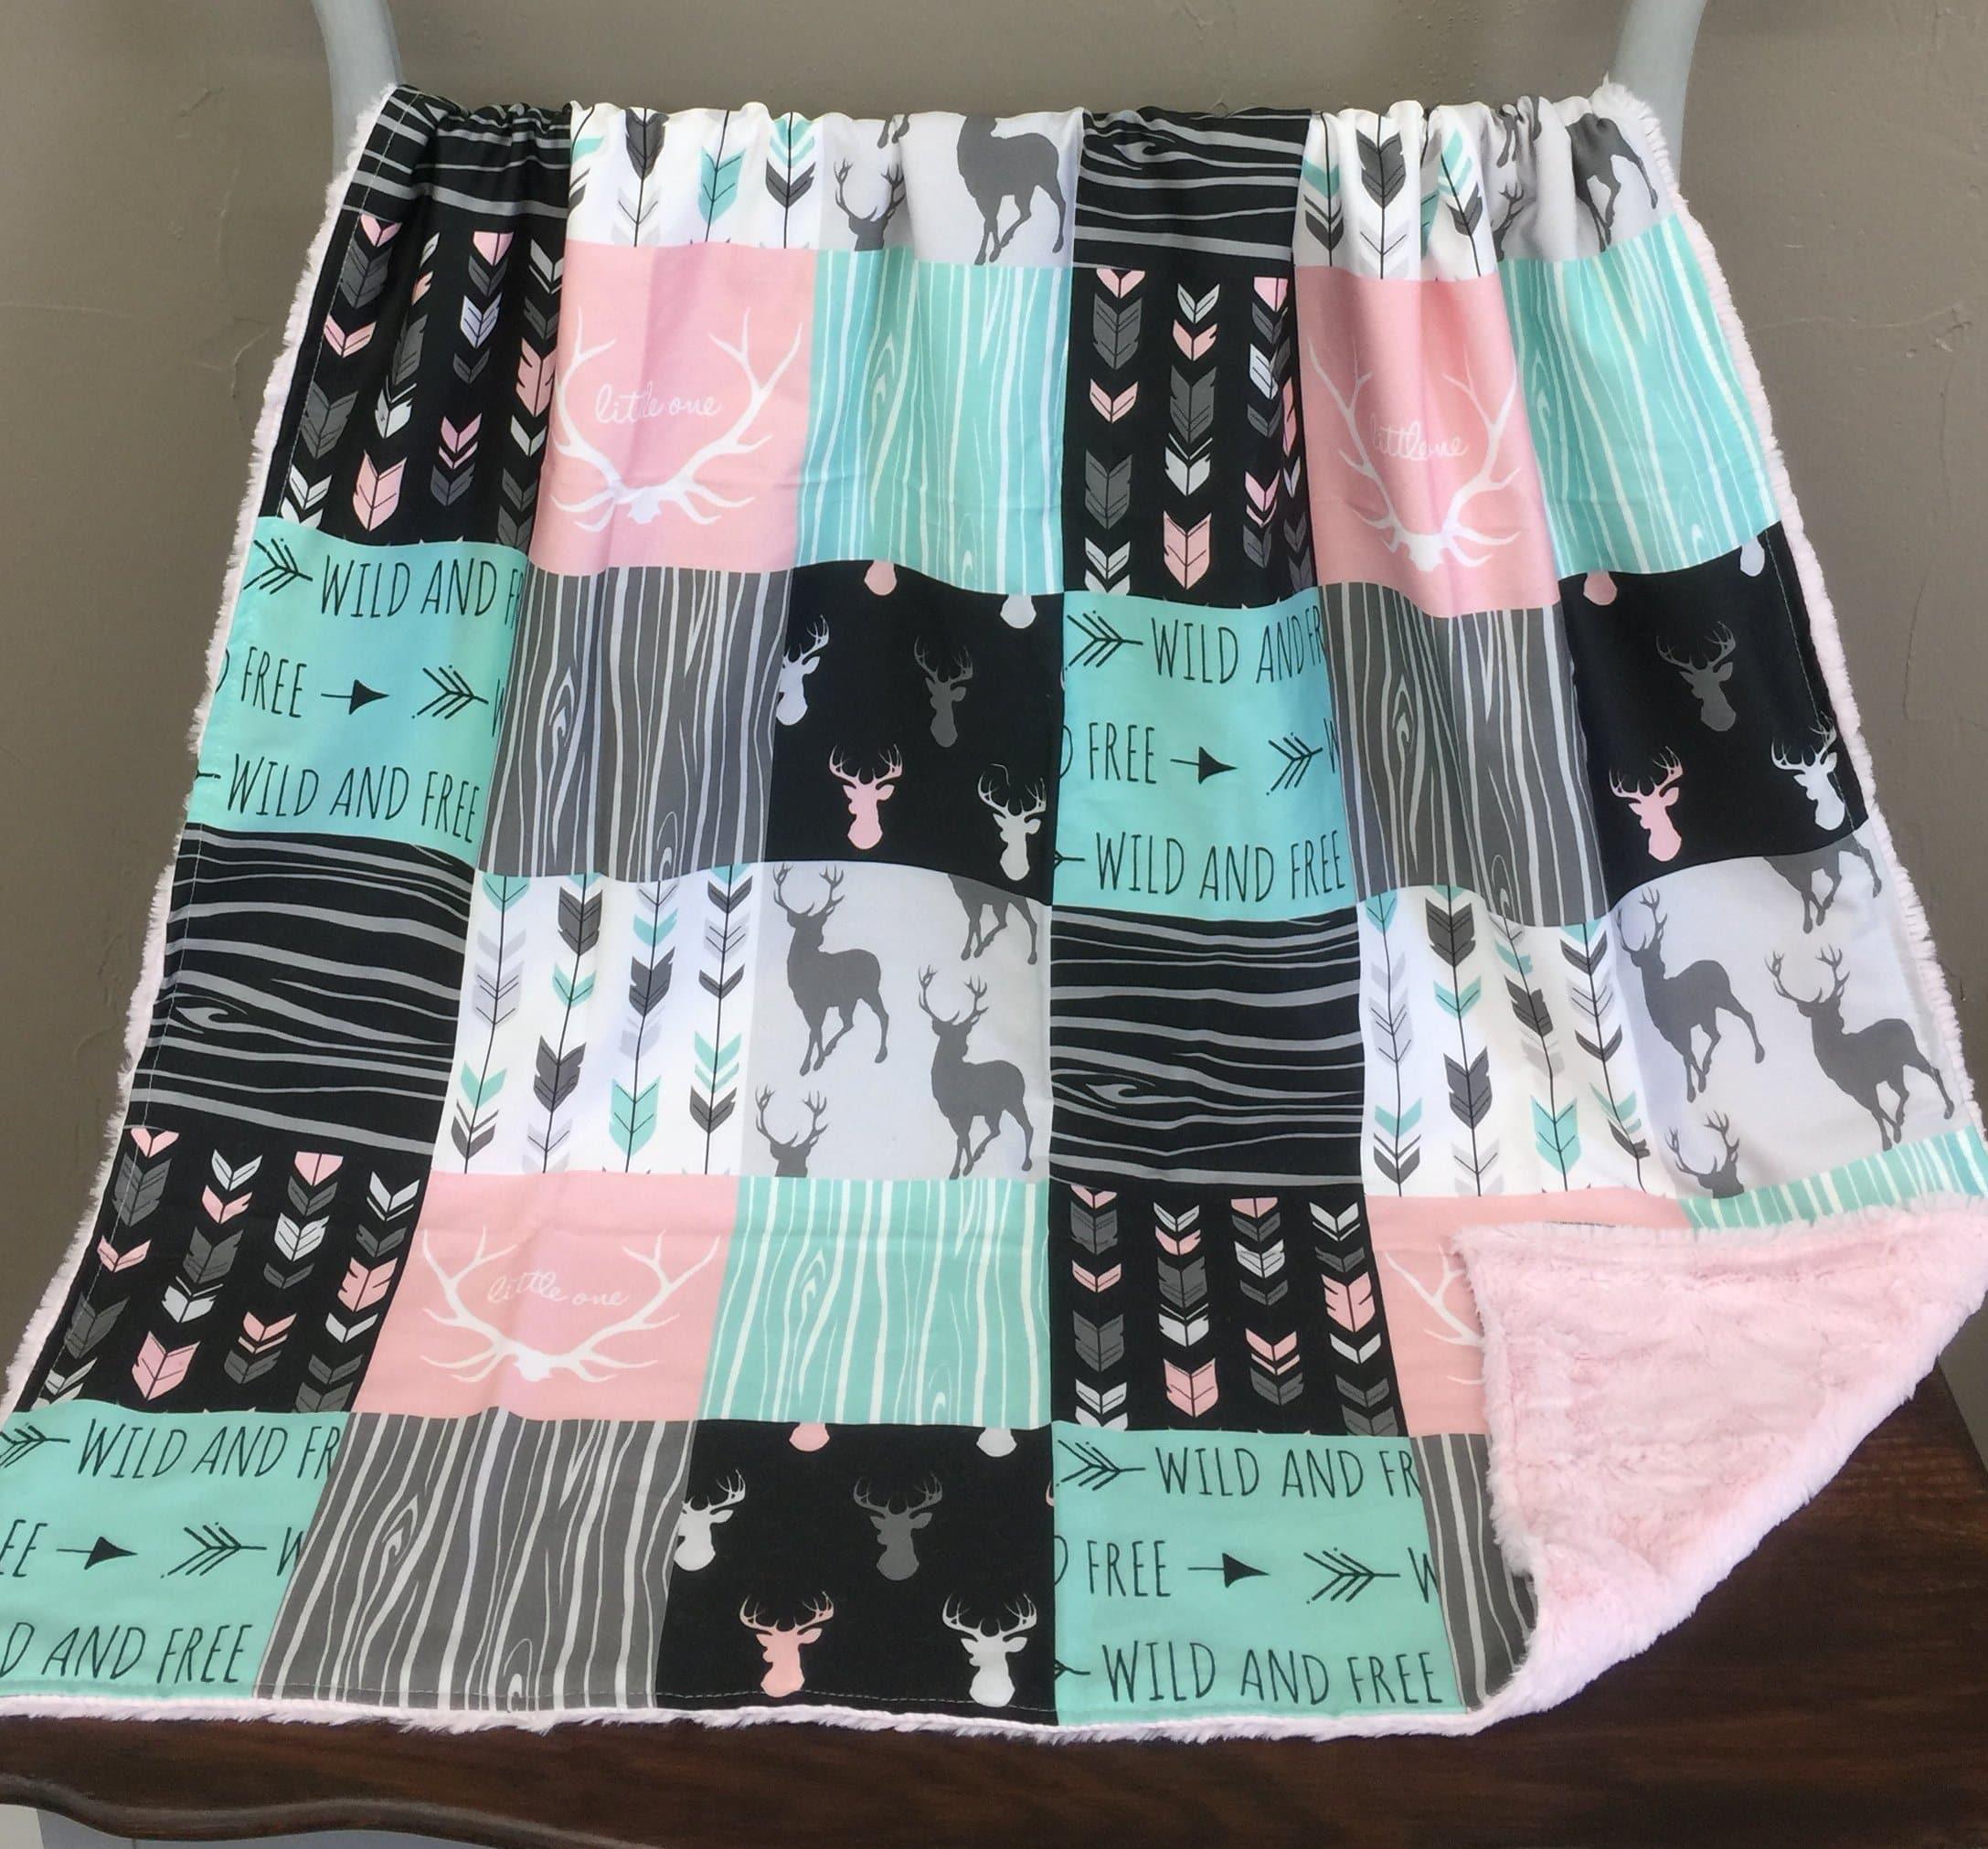 Twin, Full, Queen Comforter - Wild Free Deer Girl Patchwork Print Blanket or Comforter